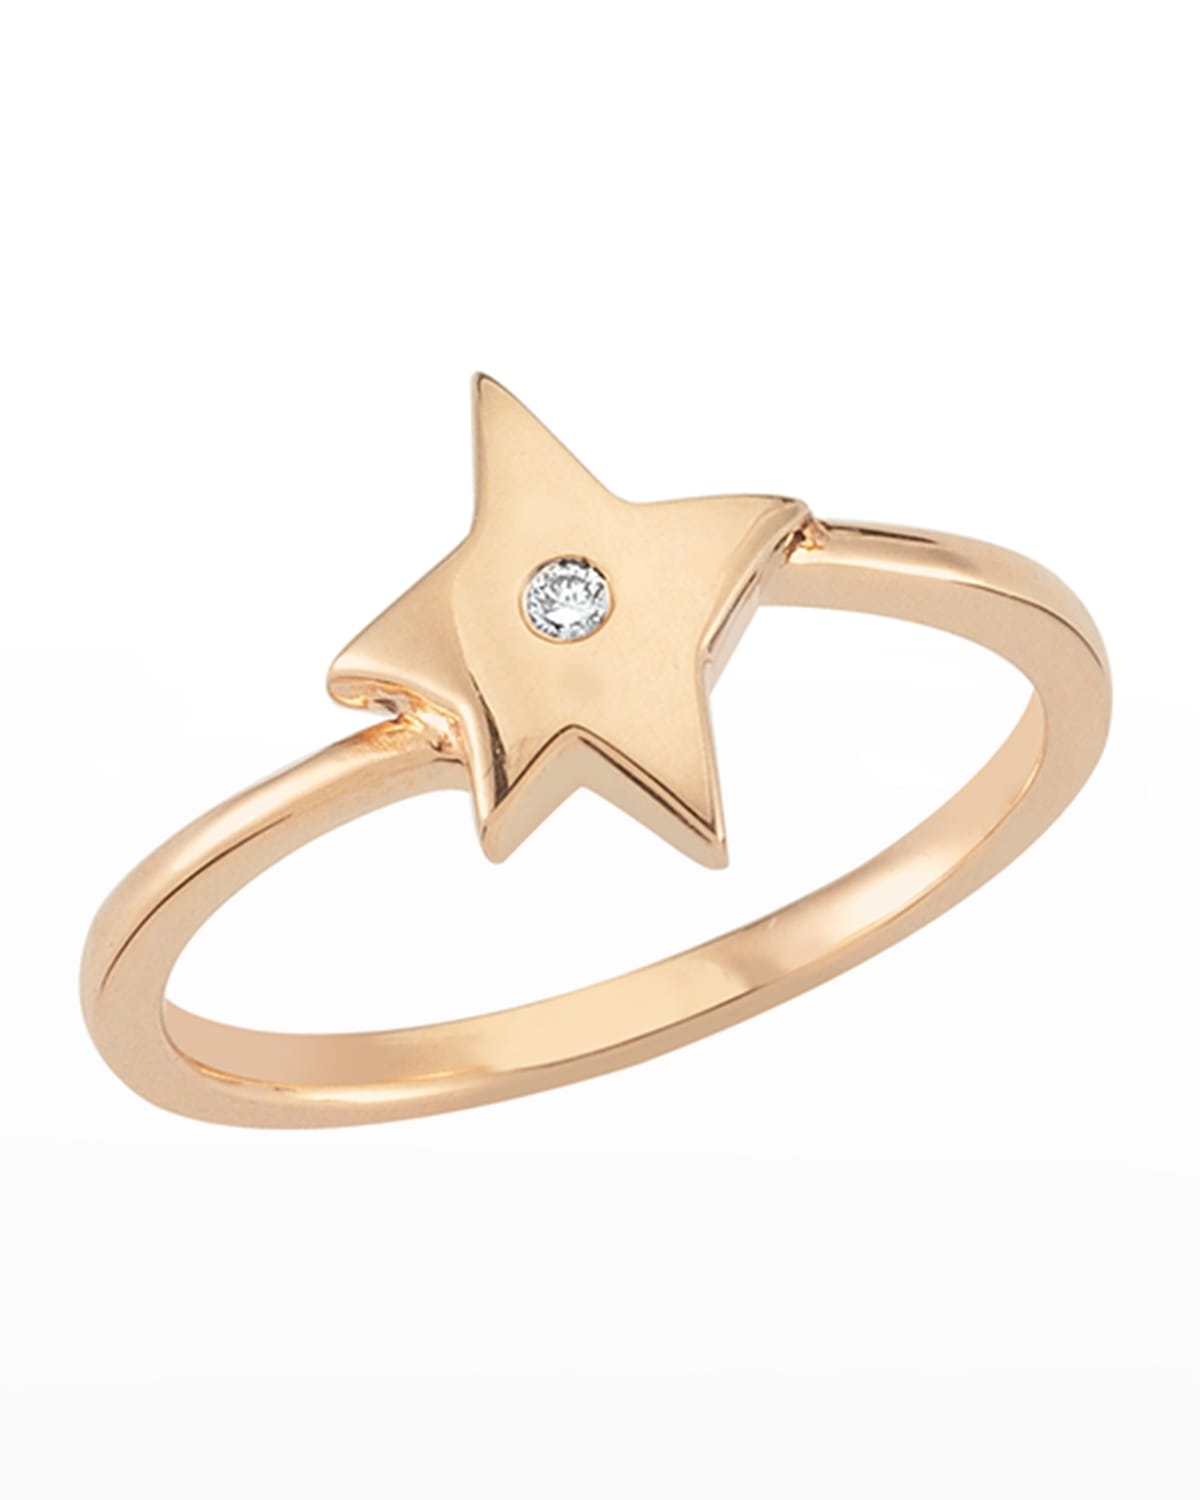 BeeGoddess 14k Rose Gold Sirius Star Diamond Ring, Size 12